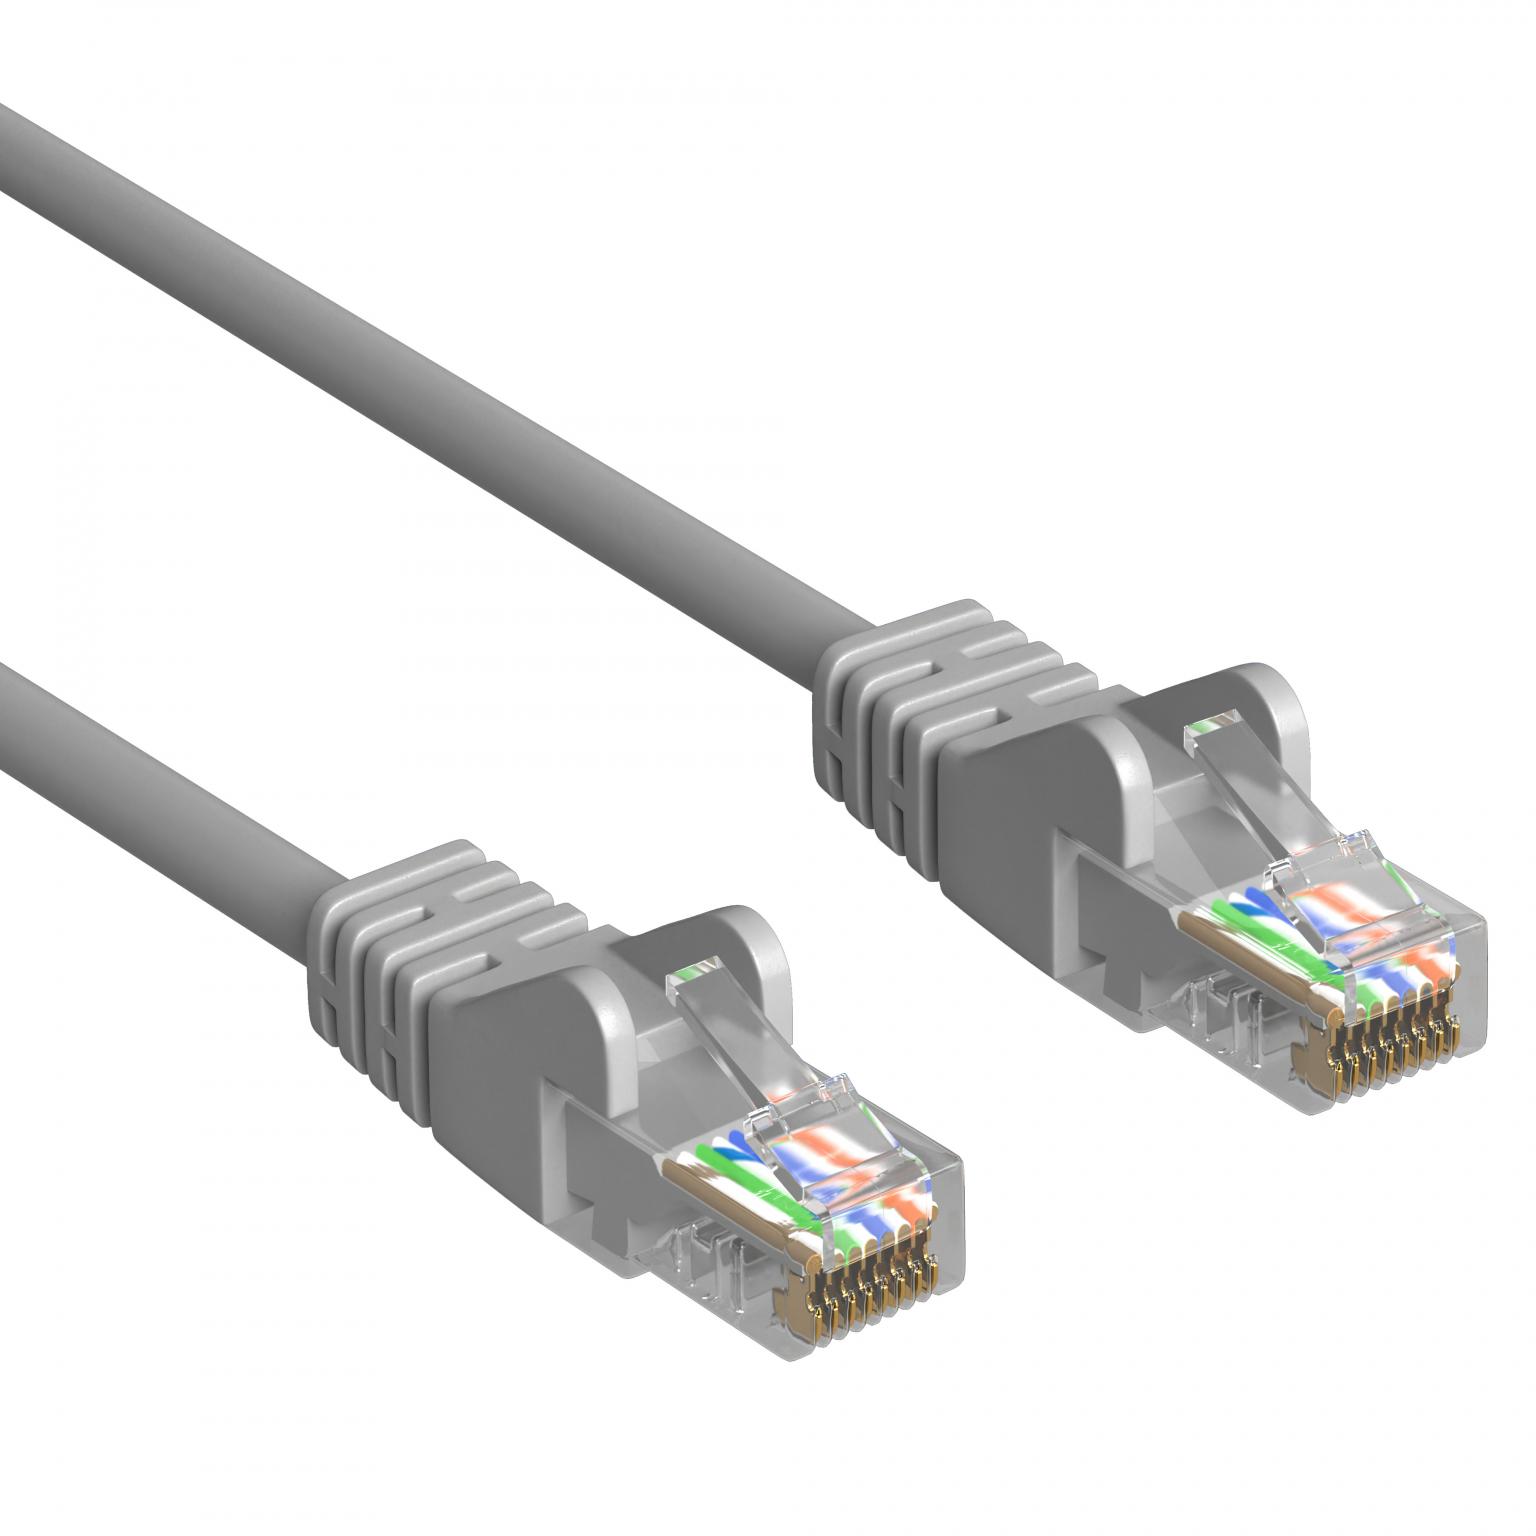 DSL-Netzwerkkabel - 2 Meter - Grau - Allteq